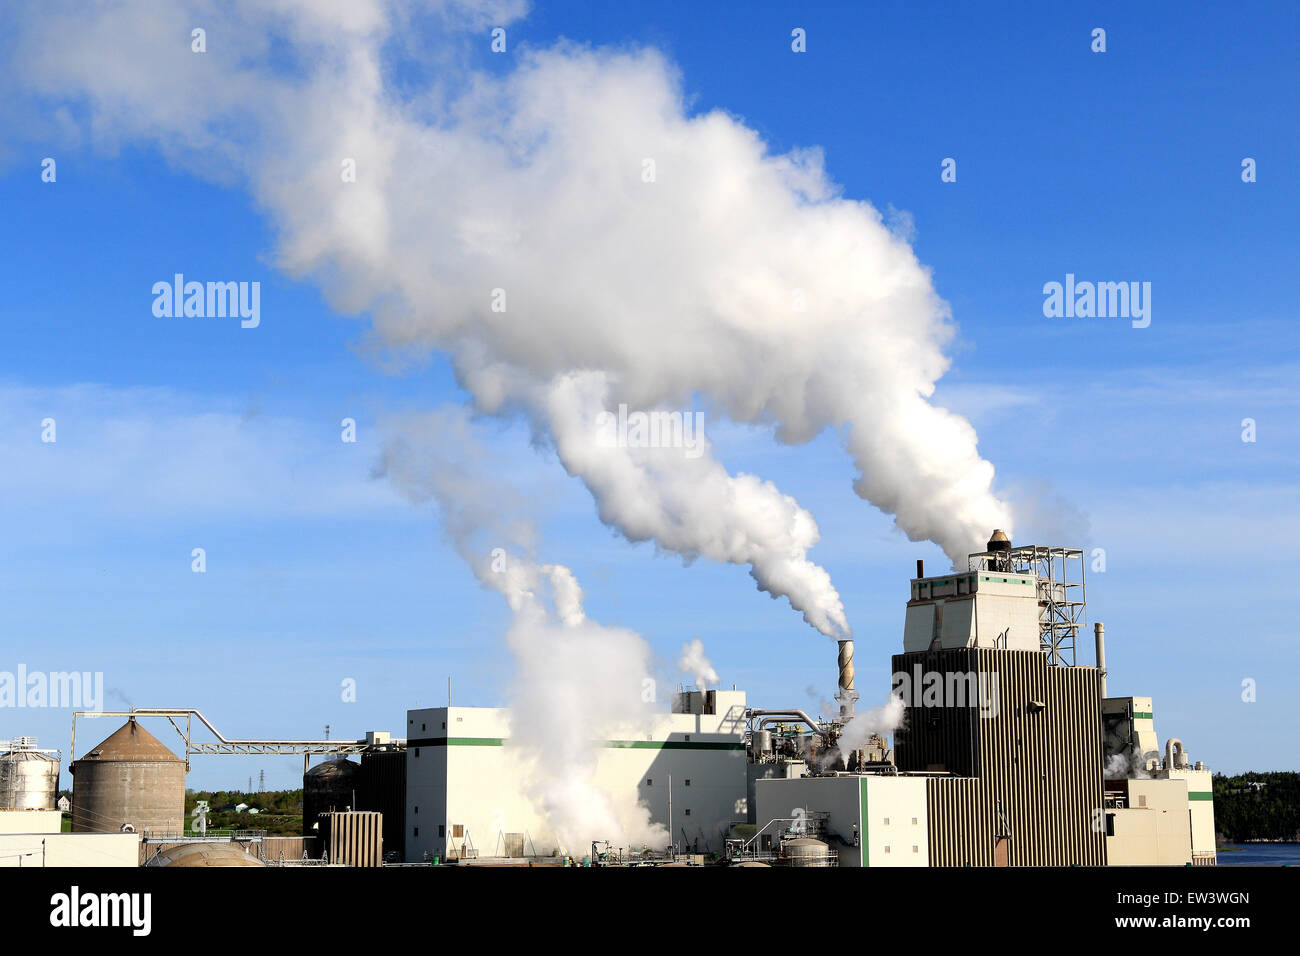 La fumée des rejets d'usine la pollution atmosphérique et les émissions de gaz à effet de serre. Banque D'Images